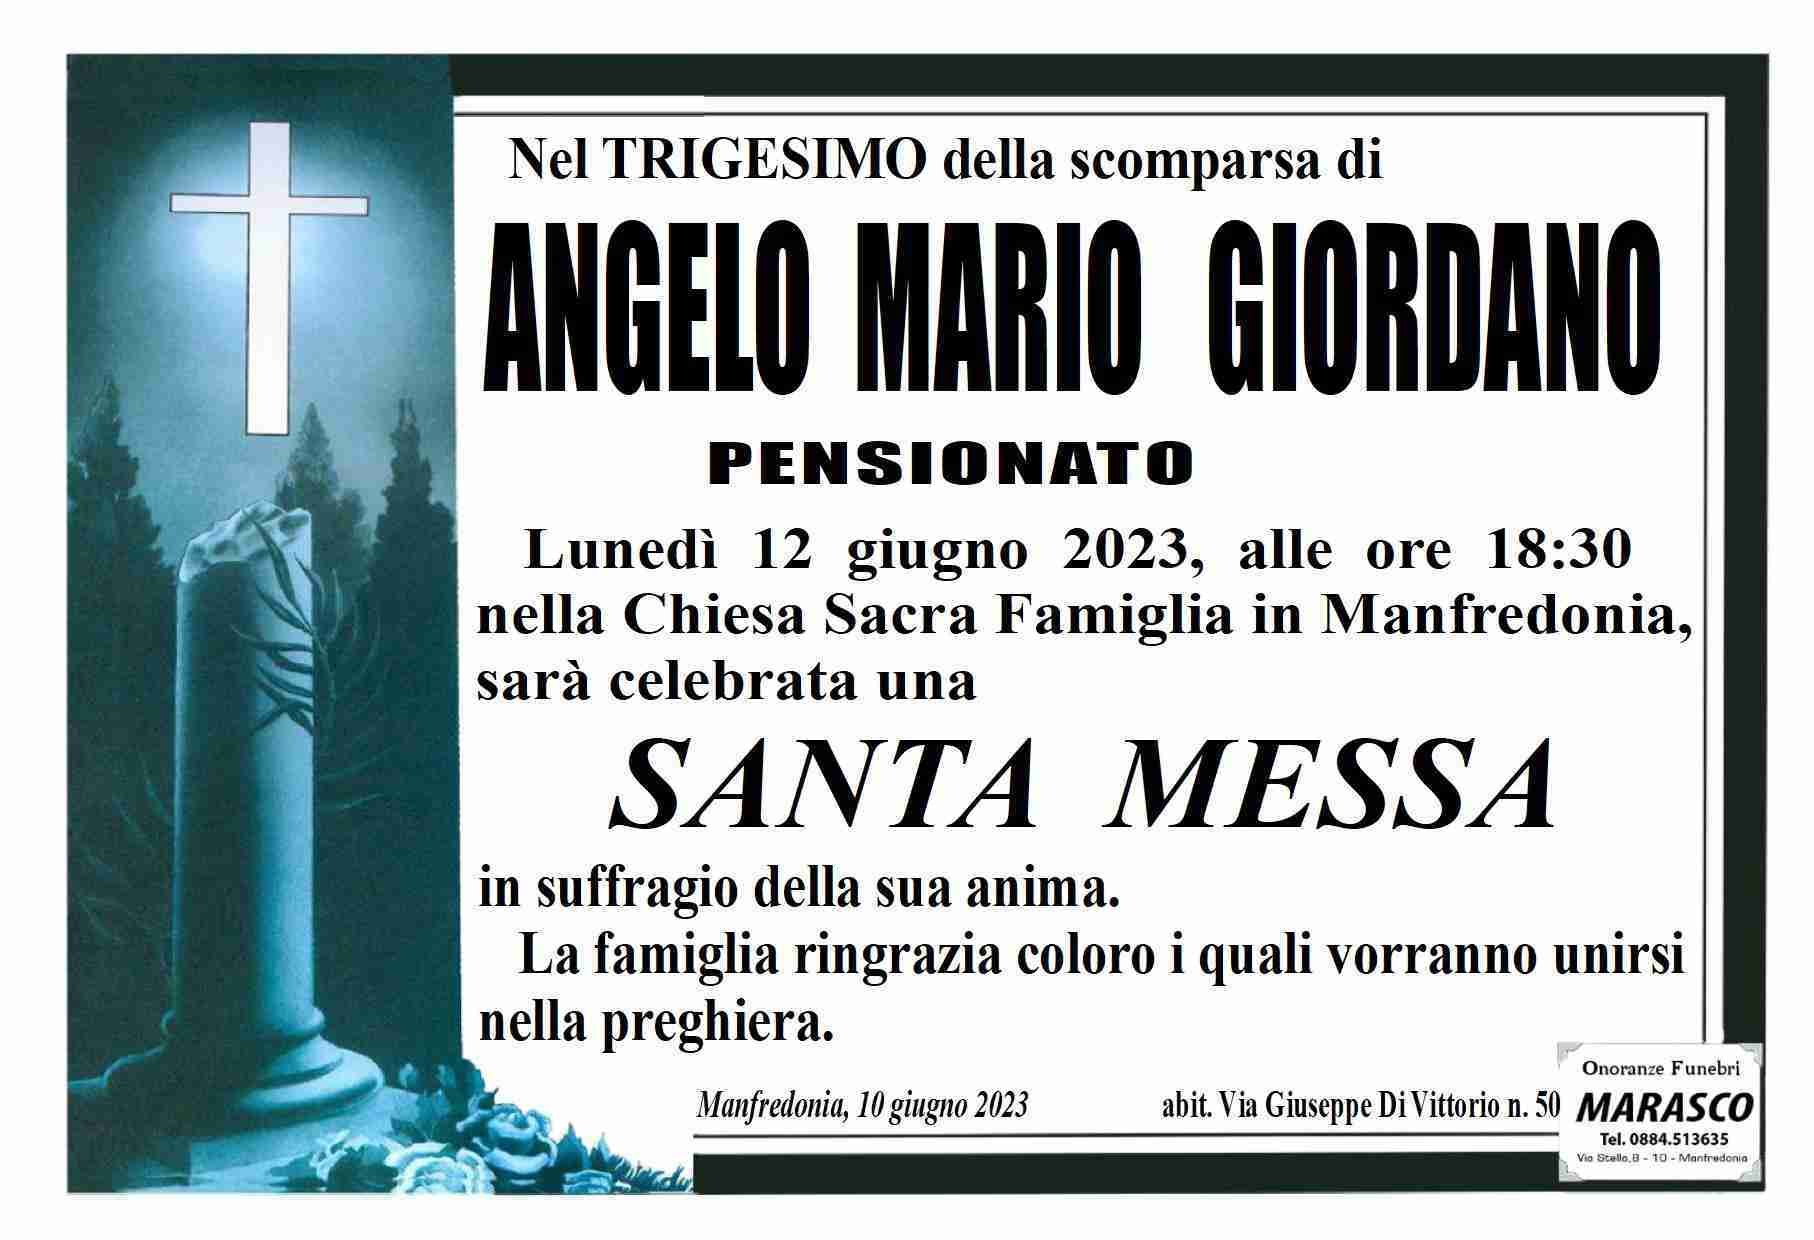 Angelo Mario Giordano